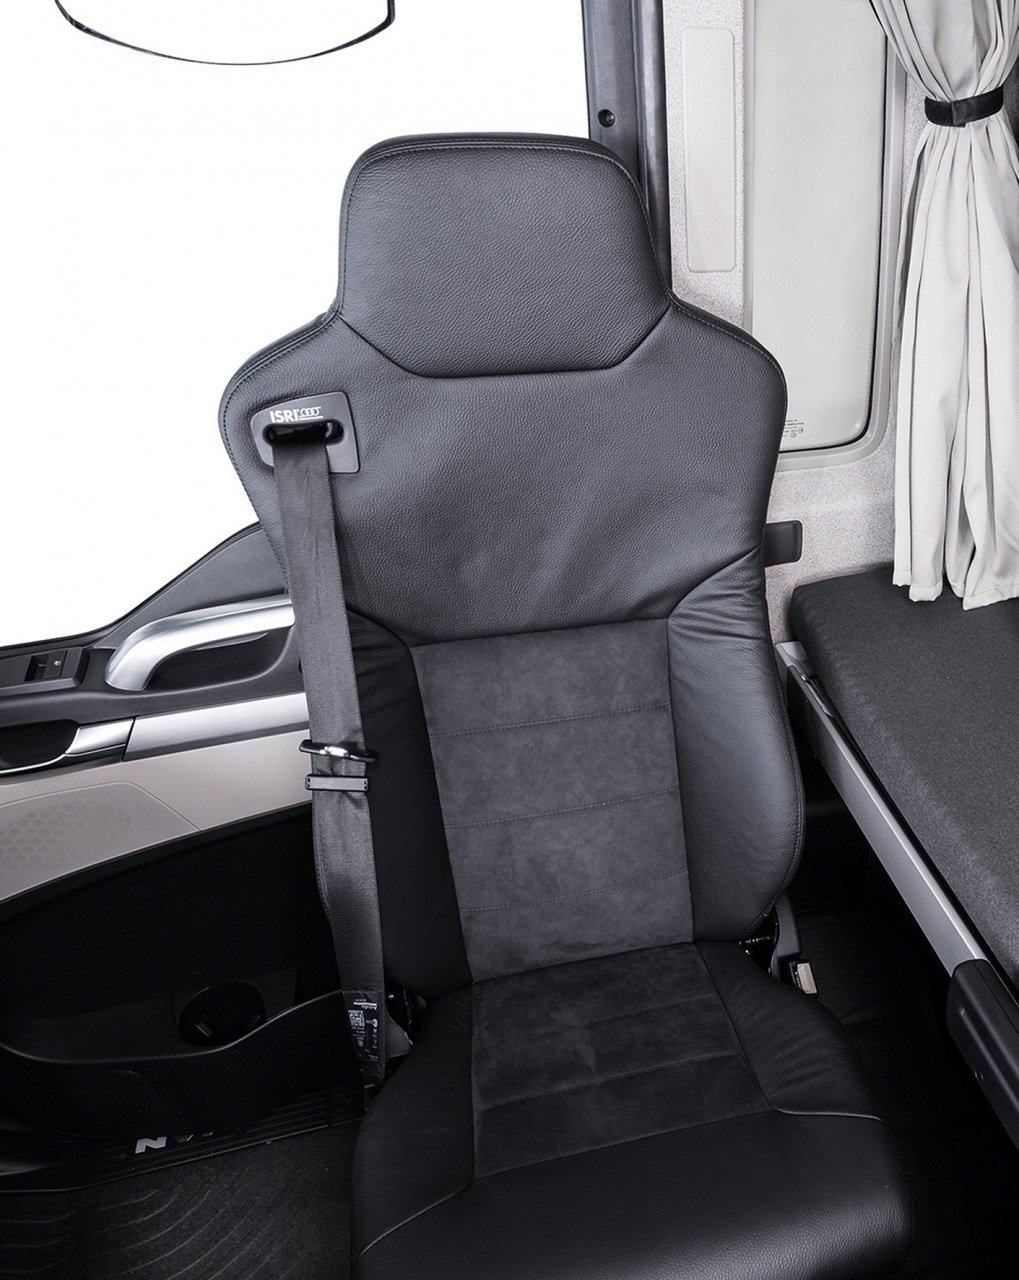 Фото сиденья: Вращающееся сиденье переднего пассажира с комбинированной обивкой из кожи и алькантары обеспечивает больший комфорт во время отдыха